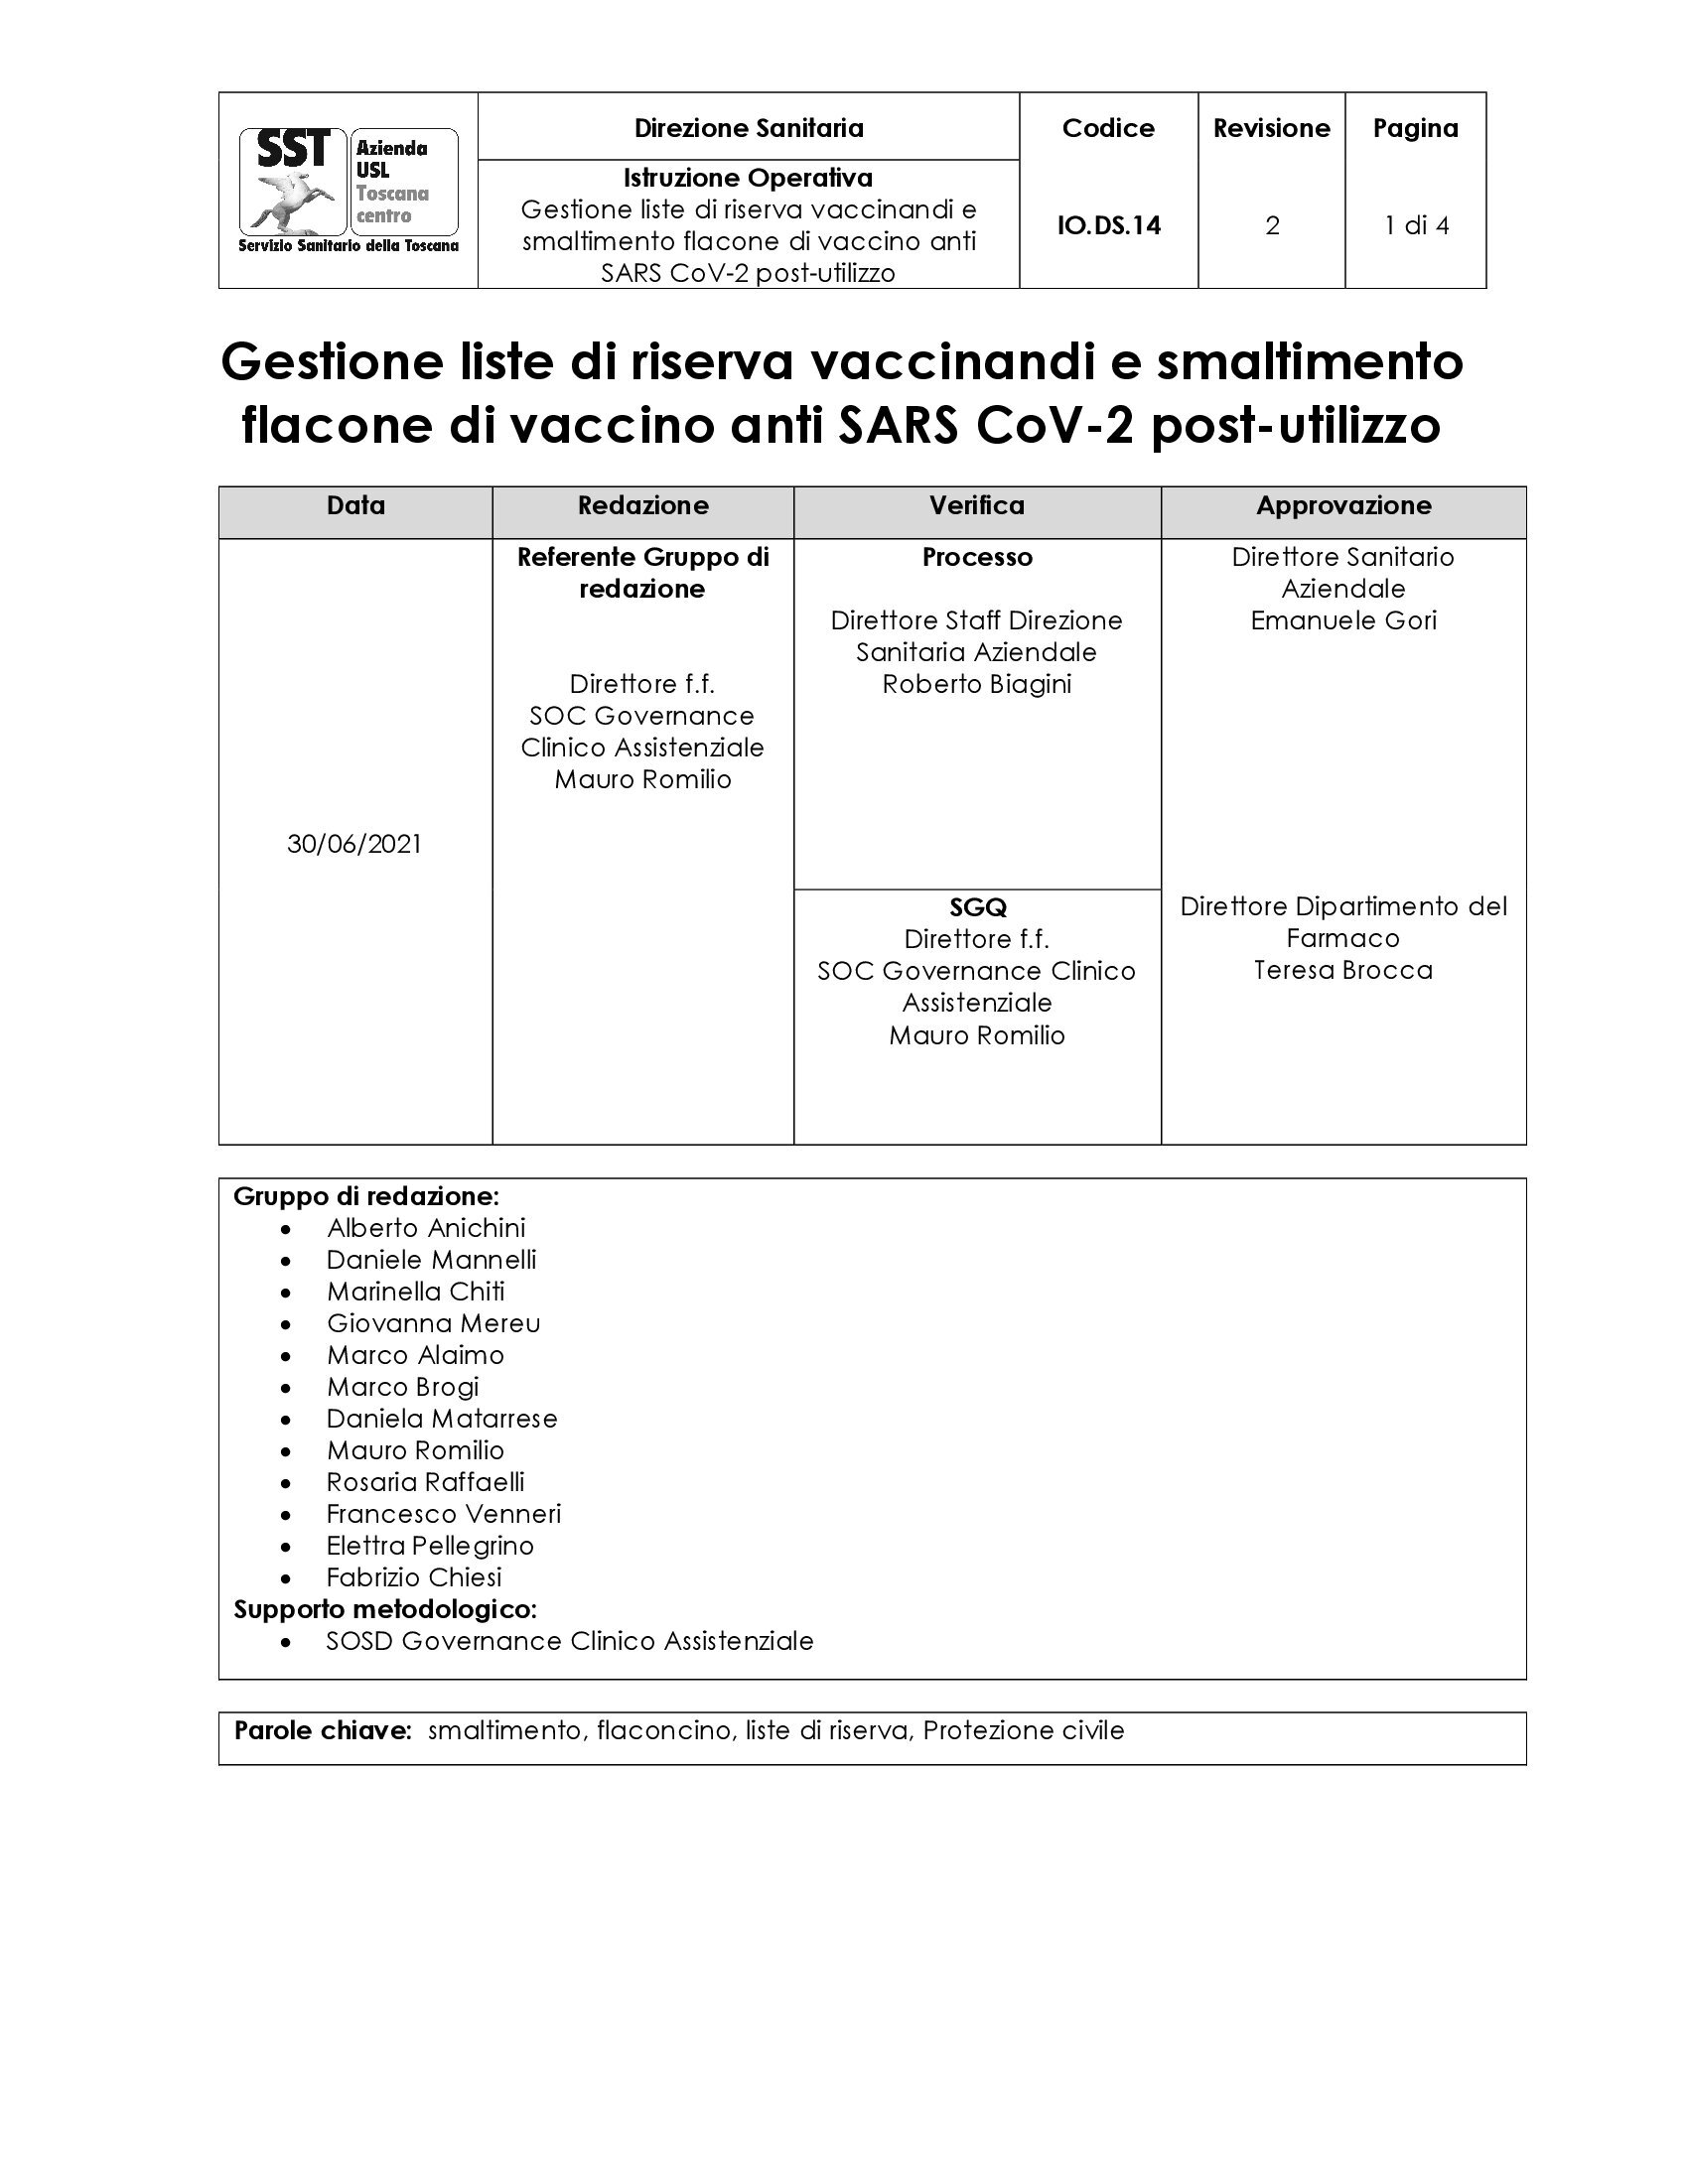 IO.DS.14 rev.2 Gestione liste di riserva vaccinandi e smaltimento flacone di vaccino anti SARS CoV-2 post-utilizzo